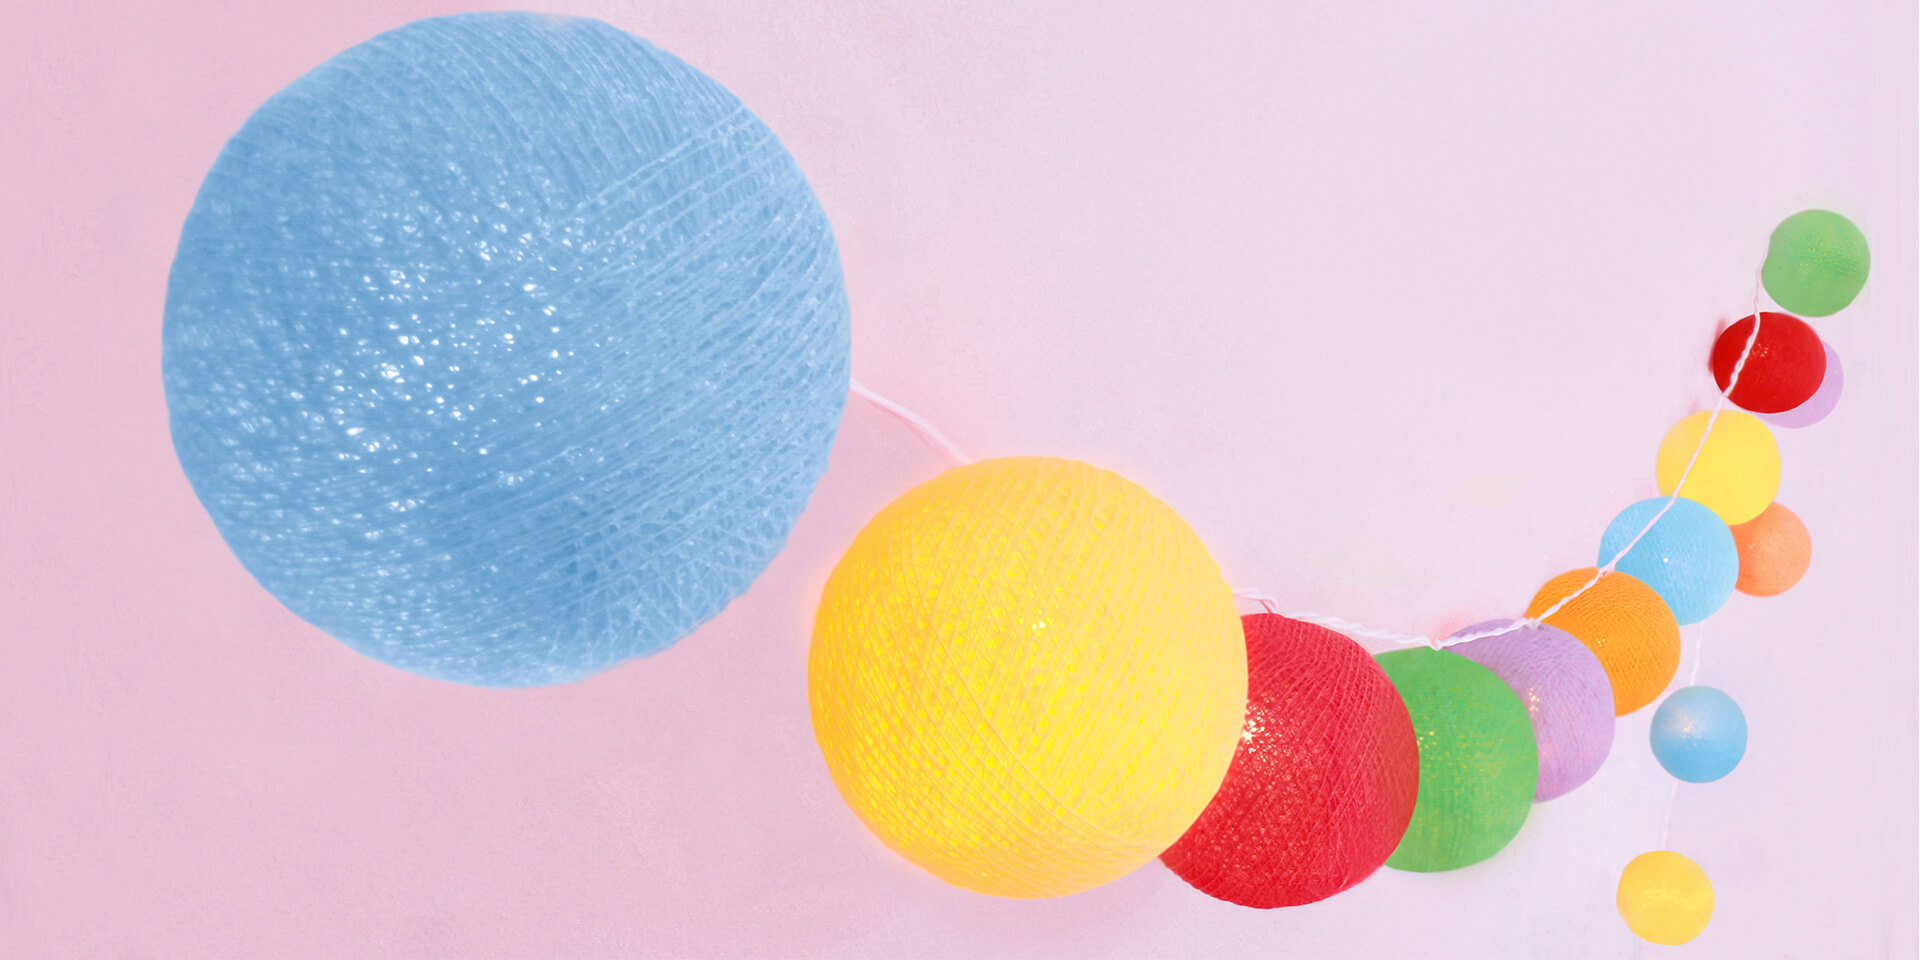 Handgearbeitete LED Lichterkette mit Kugeln aus Baumwolle. Cotton Ball Lights in den Farben Blau, Gelb Grün, Orange, Rot und Violett.